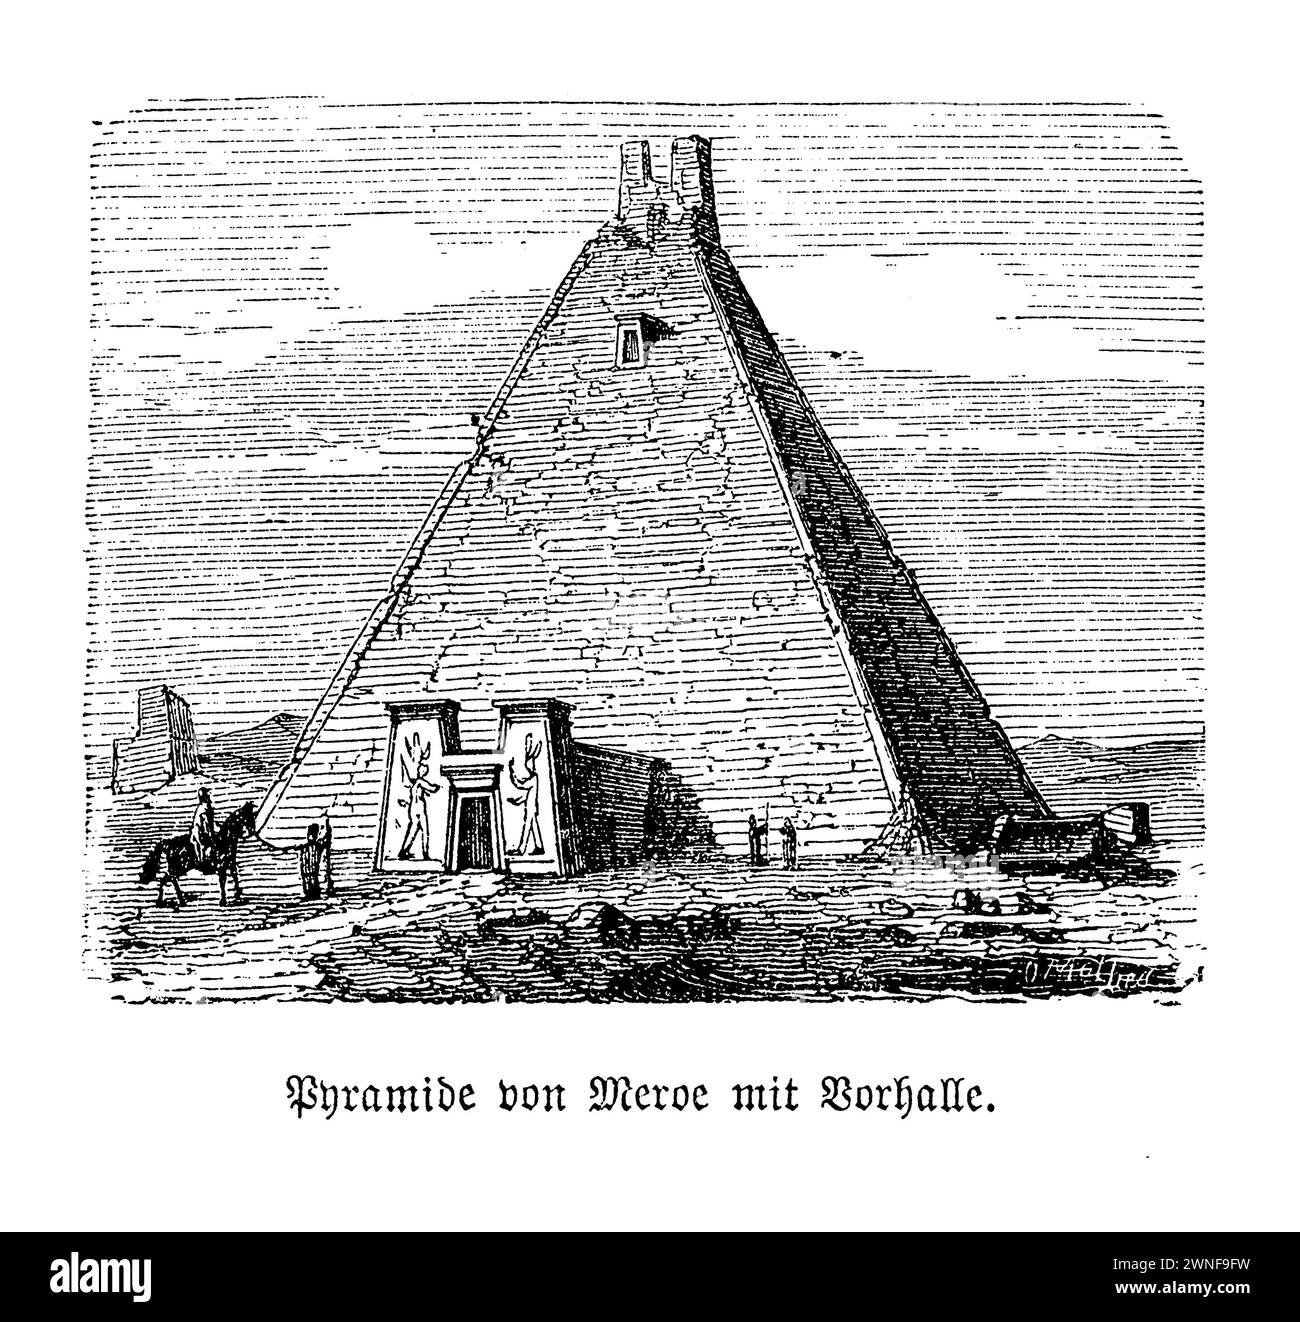 Pyramiden von Meroë, große Pyramide N6. Eingebettet im Herzen der Wüste Sudans, stehen die Pyramiden von Meroë als zeitlose Wächter des alten Kuschiten-Königreichs. Unter ihnen erzählt die große Pyramide N6, einst ein majestätisches Mausoleum für Königin Amanishakheto, eine Geschichte von Größe und Verlust. Errichtet zu Ehren der mächtigen Königin, die im Wohlstand regierte, war diese Pyramide ein Zeugnis der architektonischen Leistungsfähigkeit und des reichen kulturellen Erbes von Meroë. Sein Erbe wurde jedoch in den 1830er Jahren zerstört, als der Schatzsucher Giuseppe Ferlini, getrieben von Gier, irreparablen Schaden auf seiner Suche nach Gold zufügte. Stockfoto